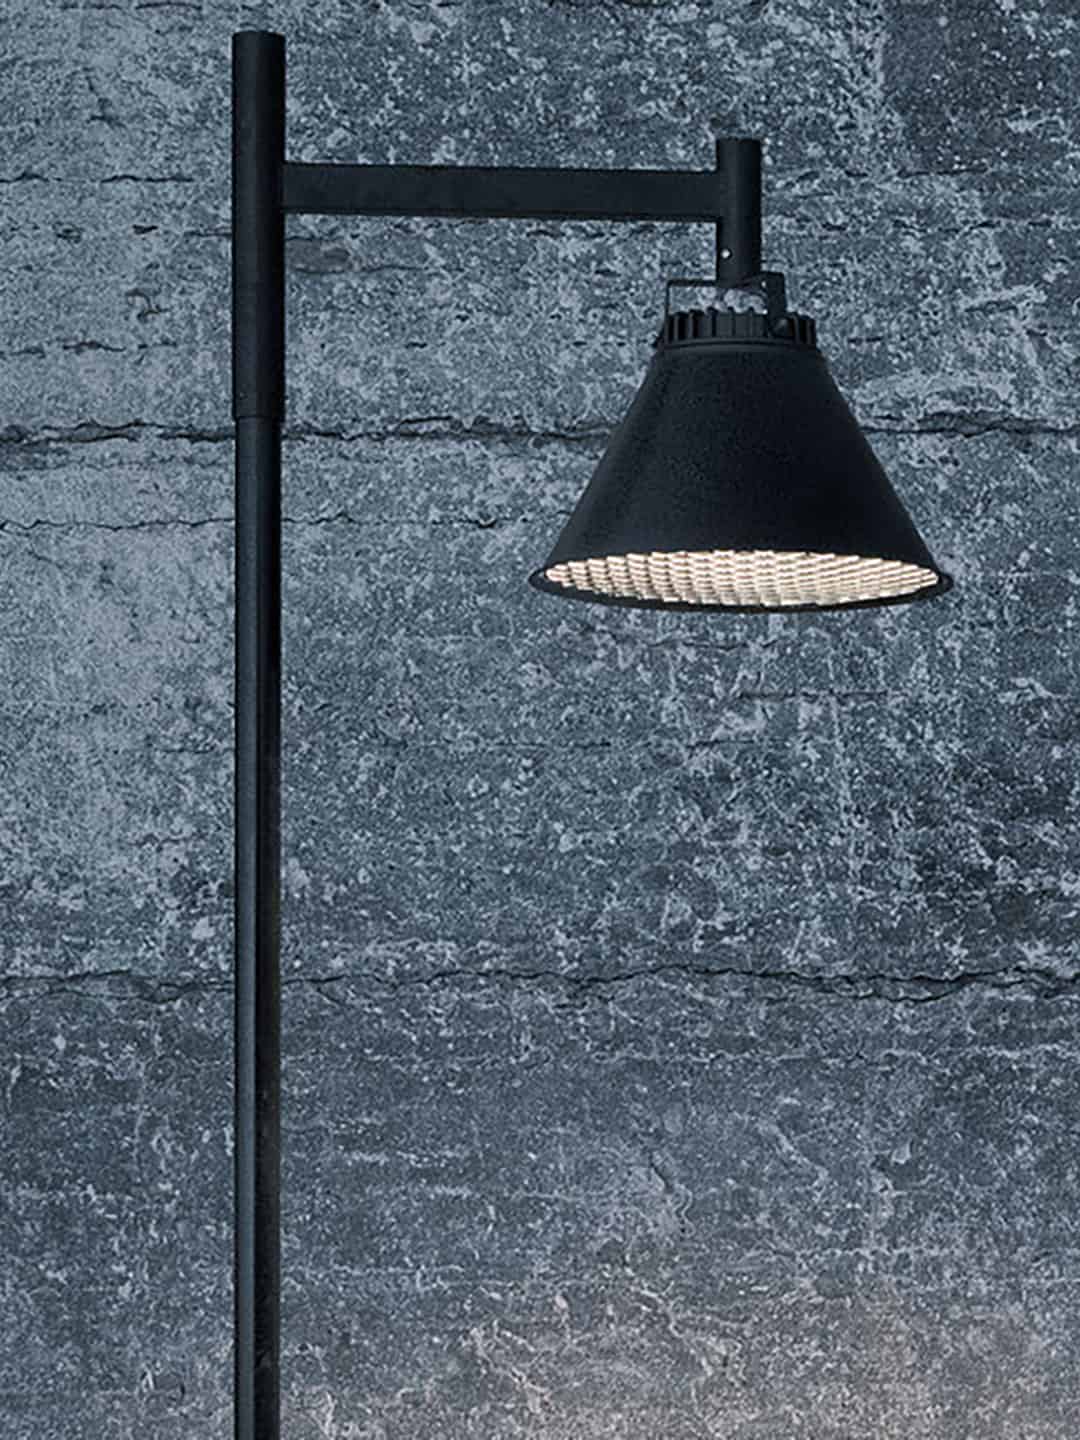 Уличный светильник Zero Lighting City Pole Asymmetrical в скандинавском стиле